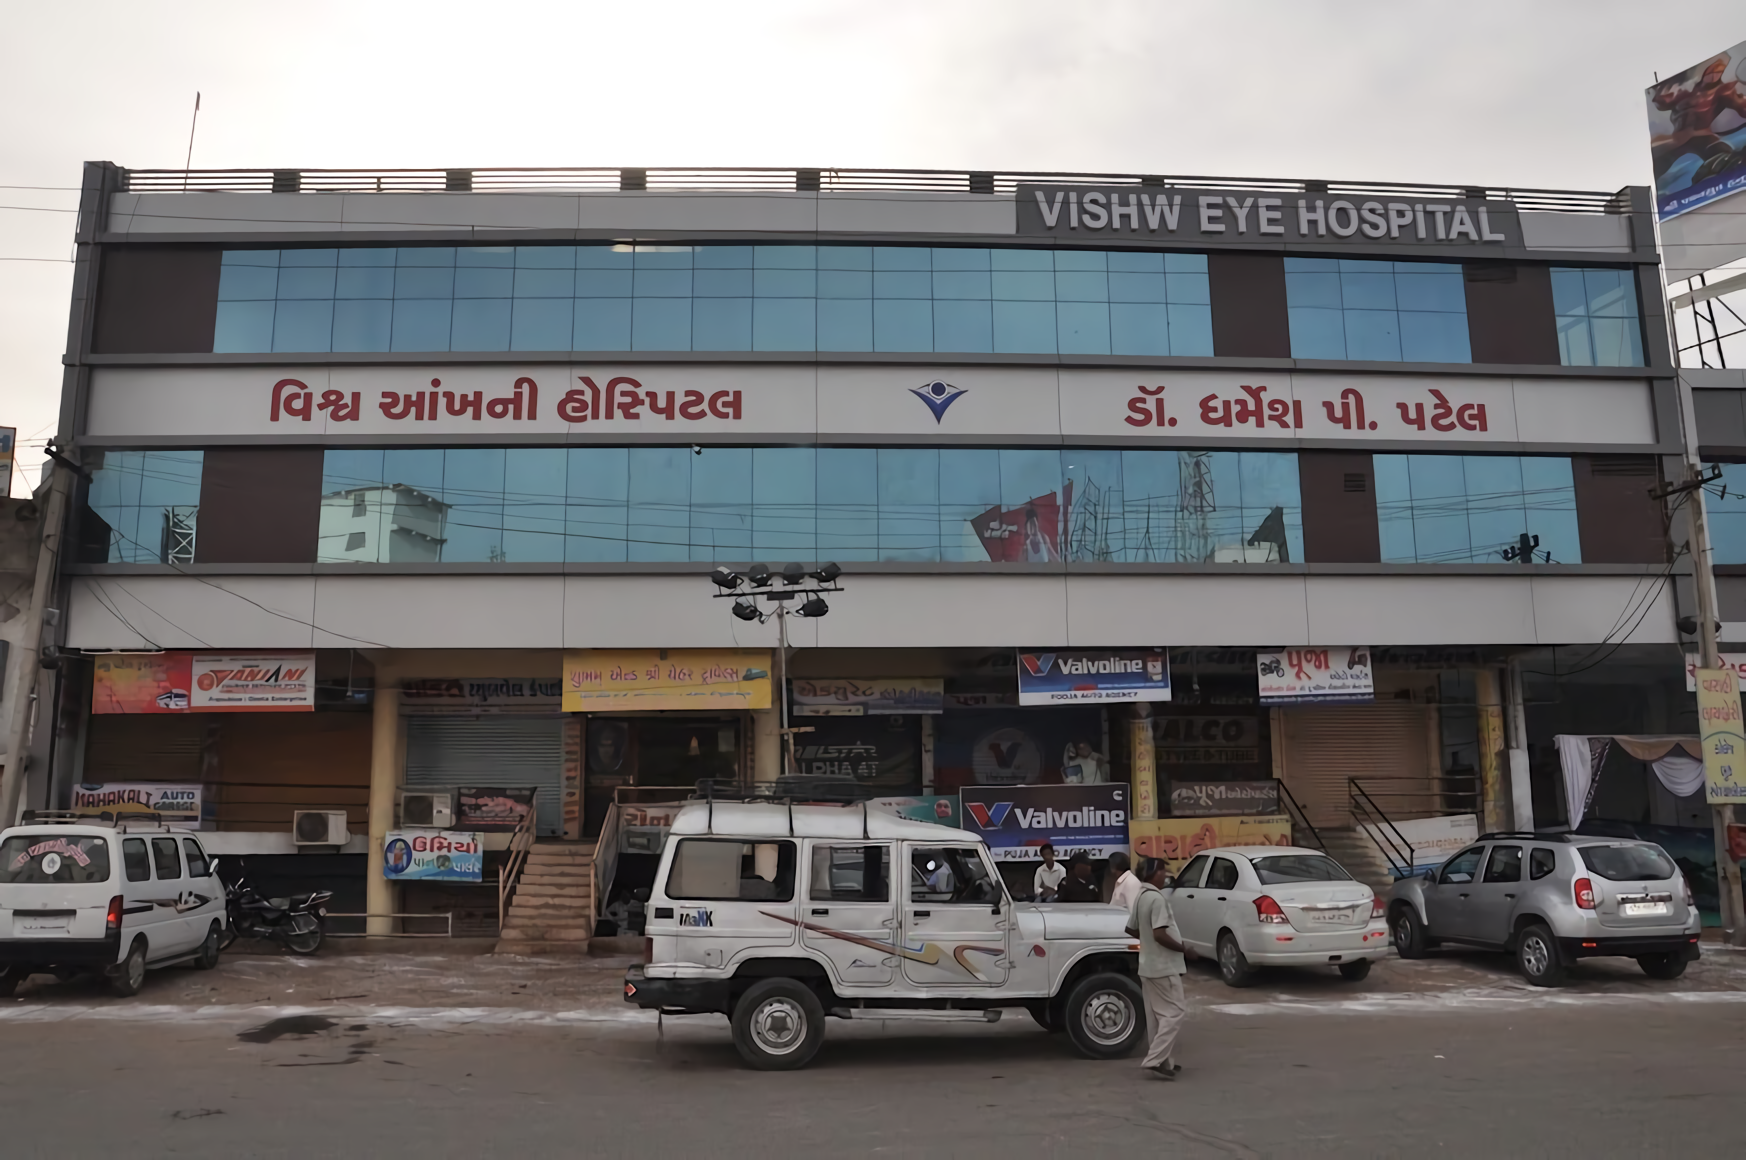 Vishw Eye Hospital